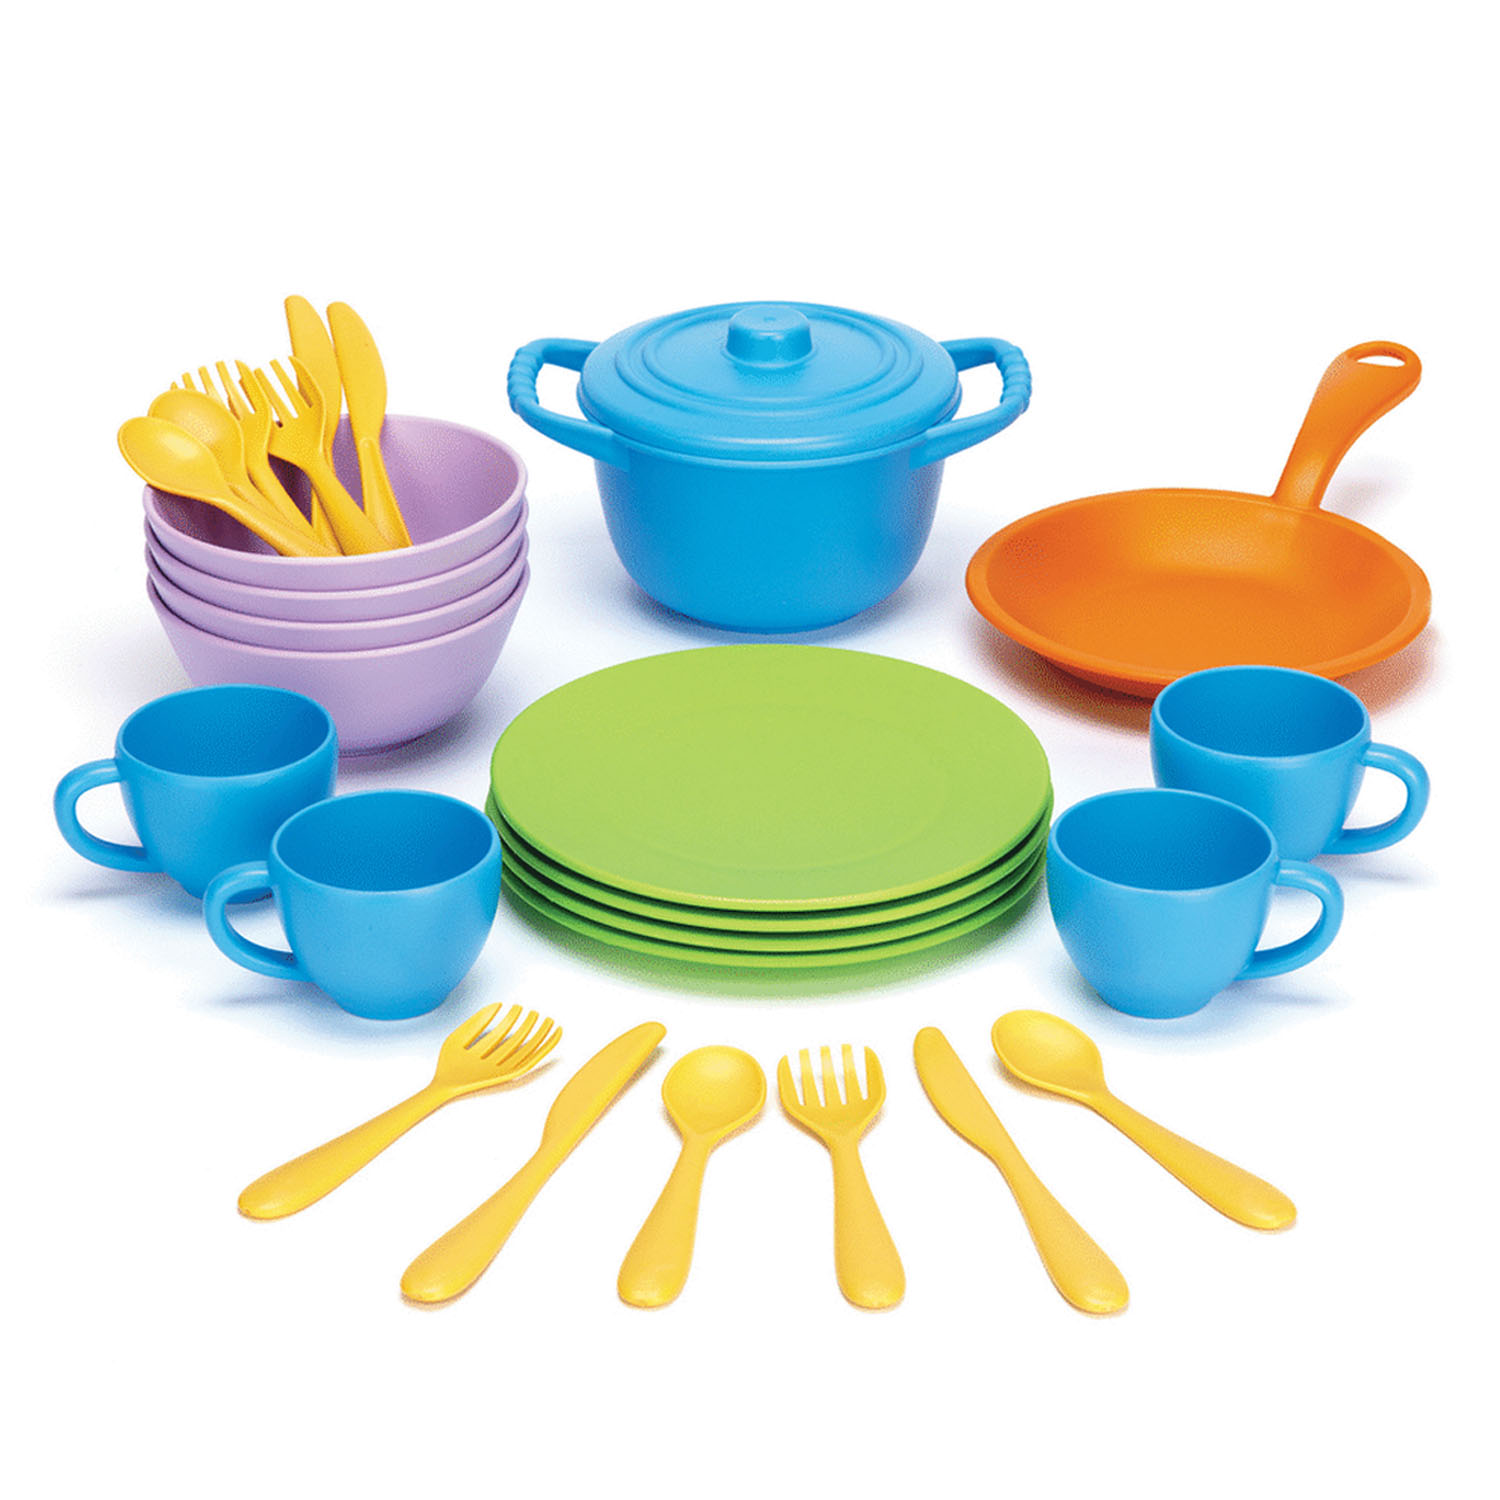 Maak leven voor eeuwig In hoeveelheid Green Toys Recycled Plastic Cookware & Dining Set | Becker's